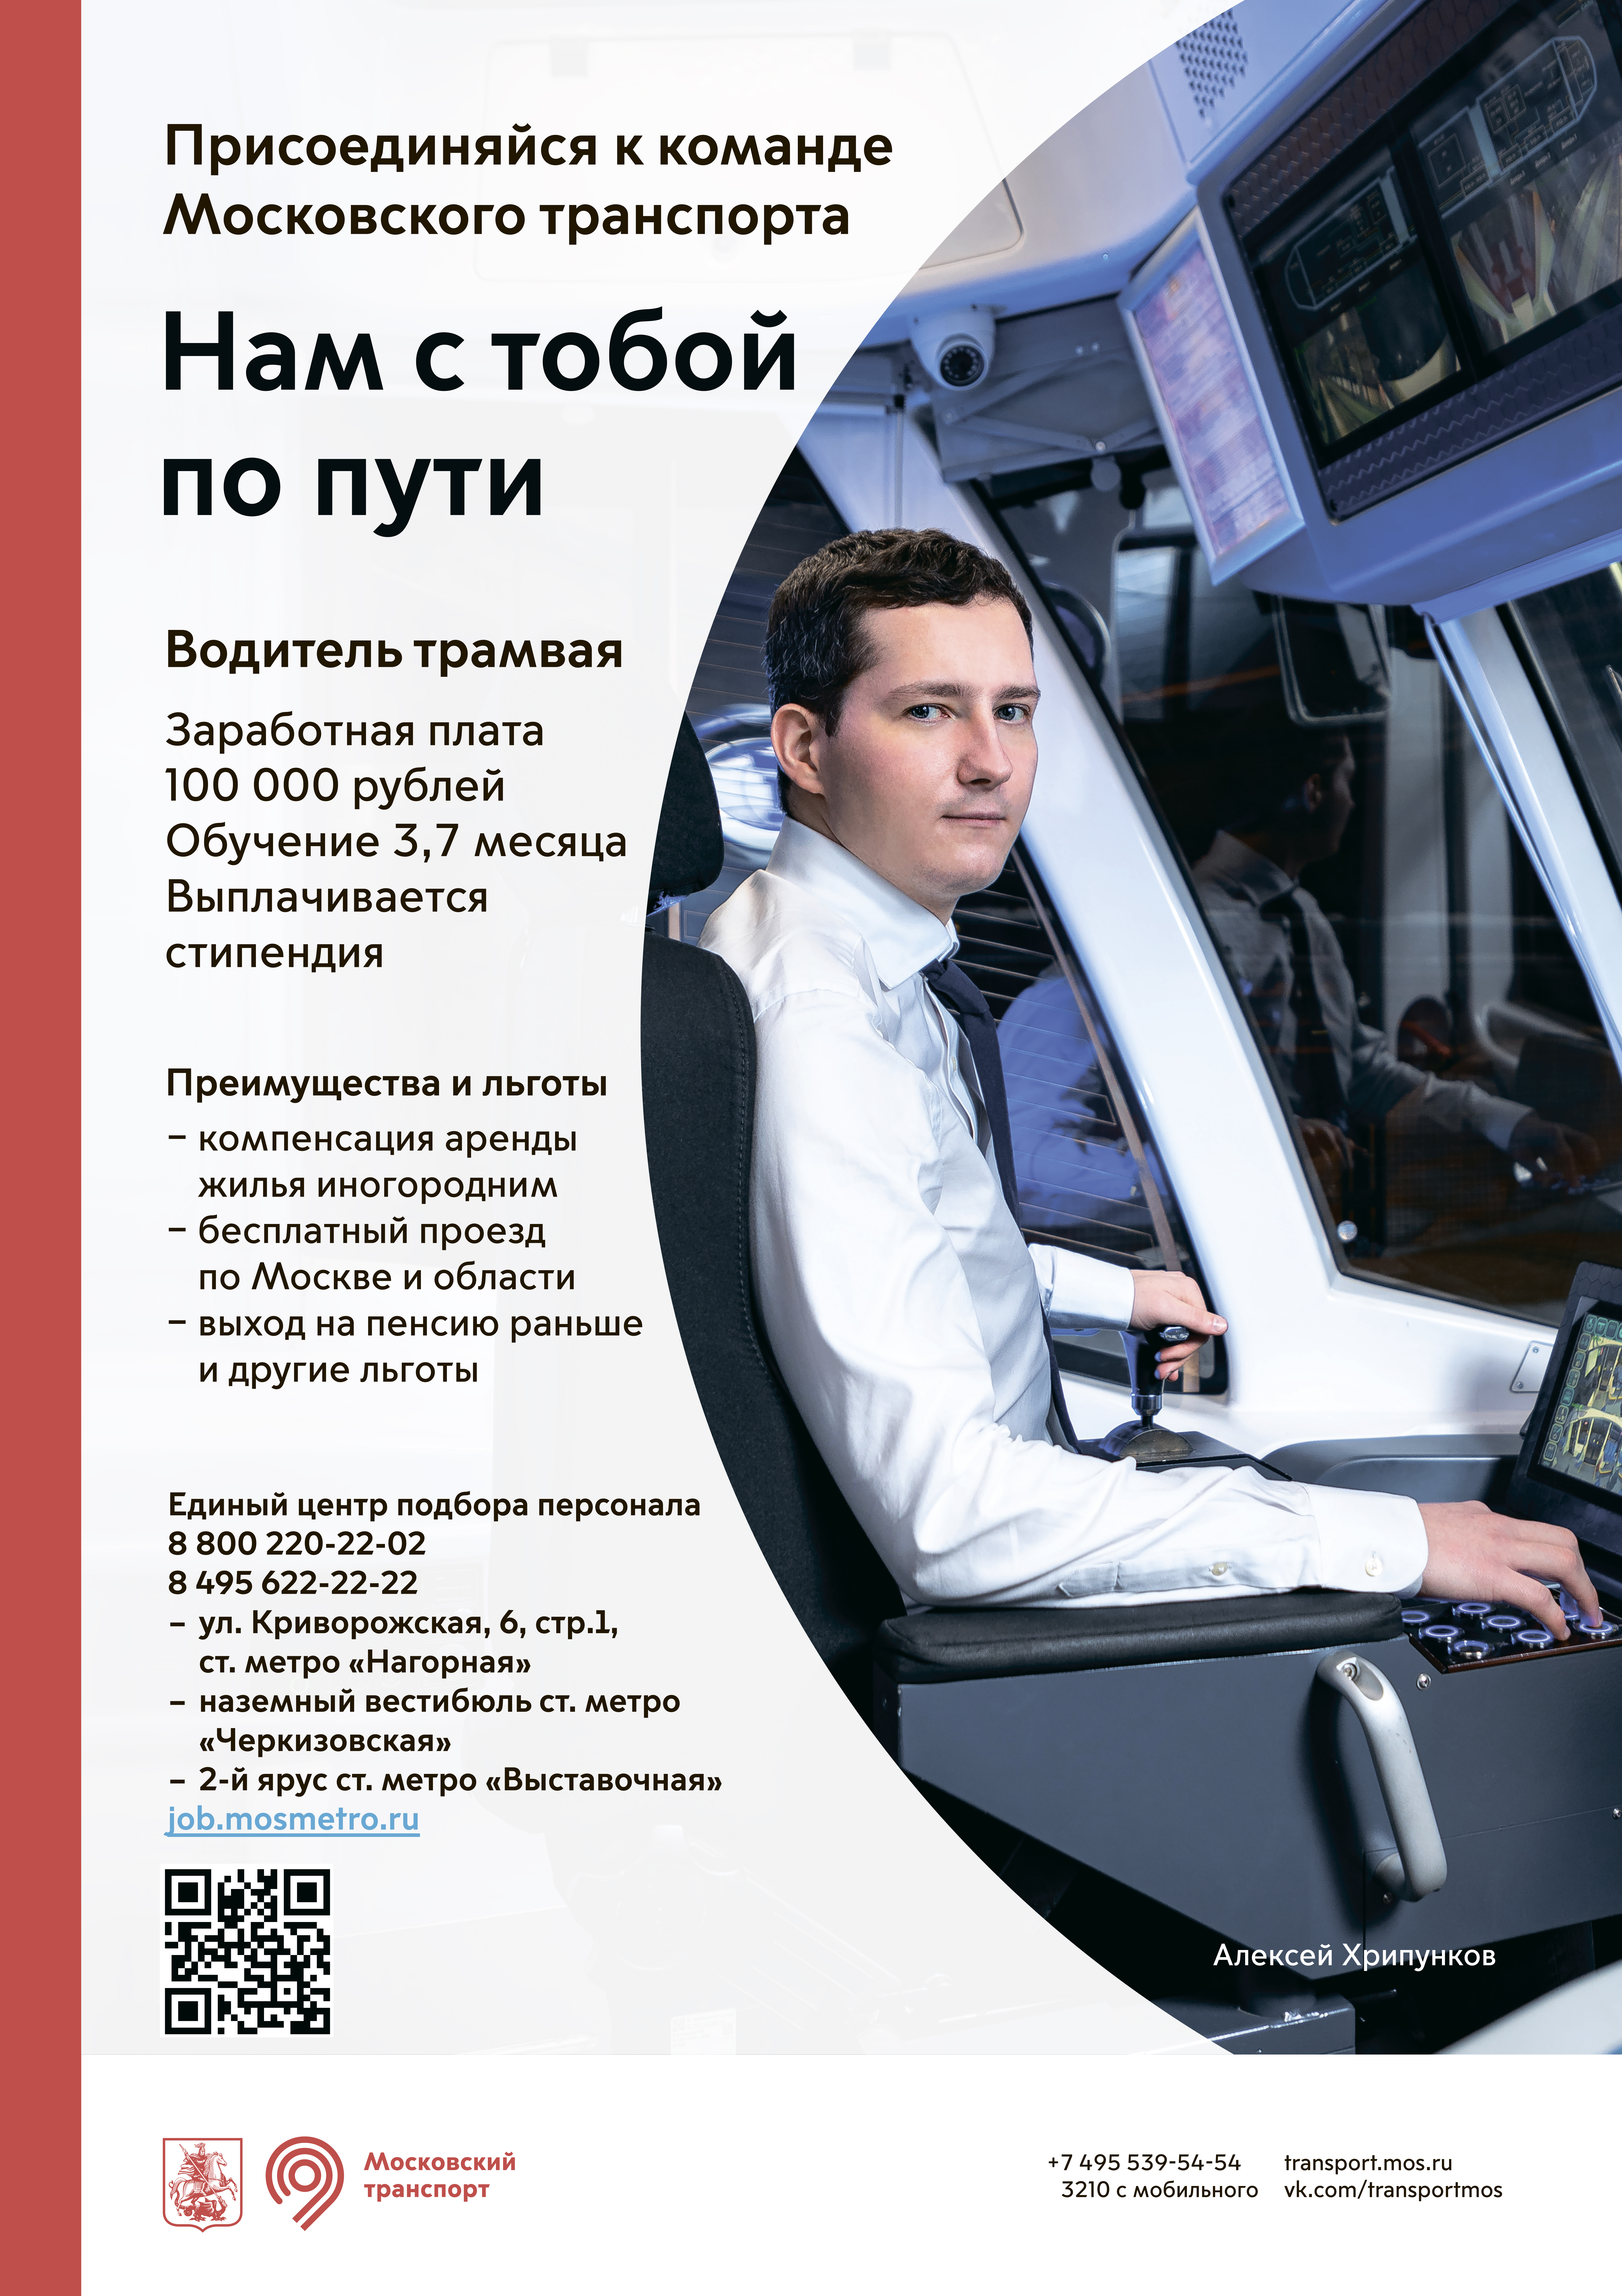 Присоединяйся к команде Московского транспорта